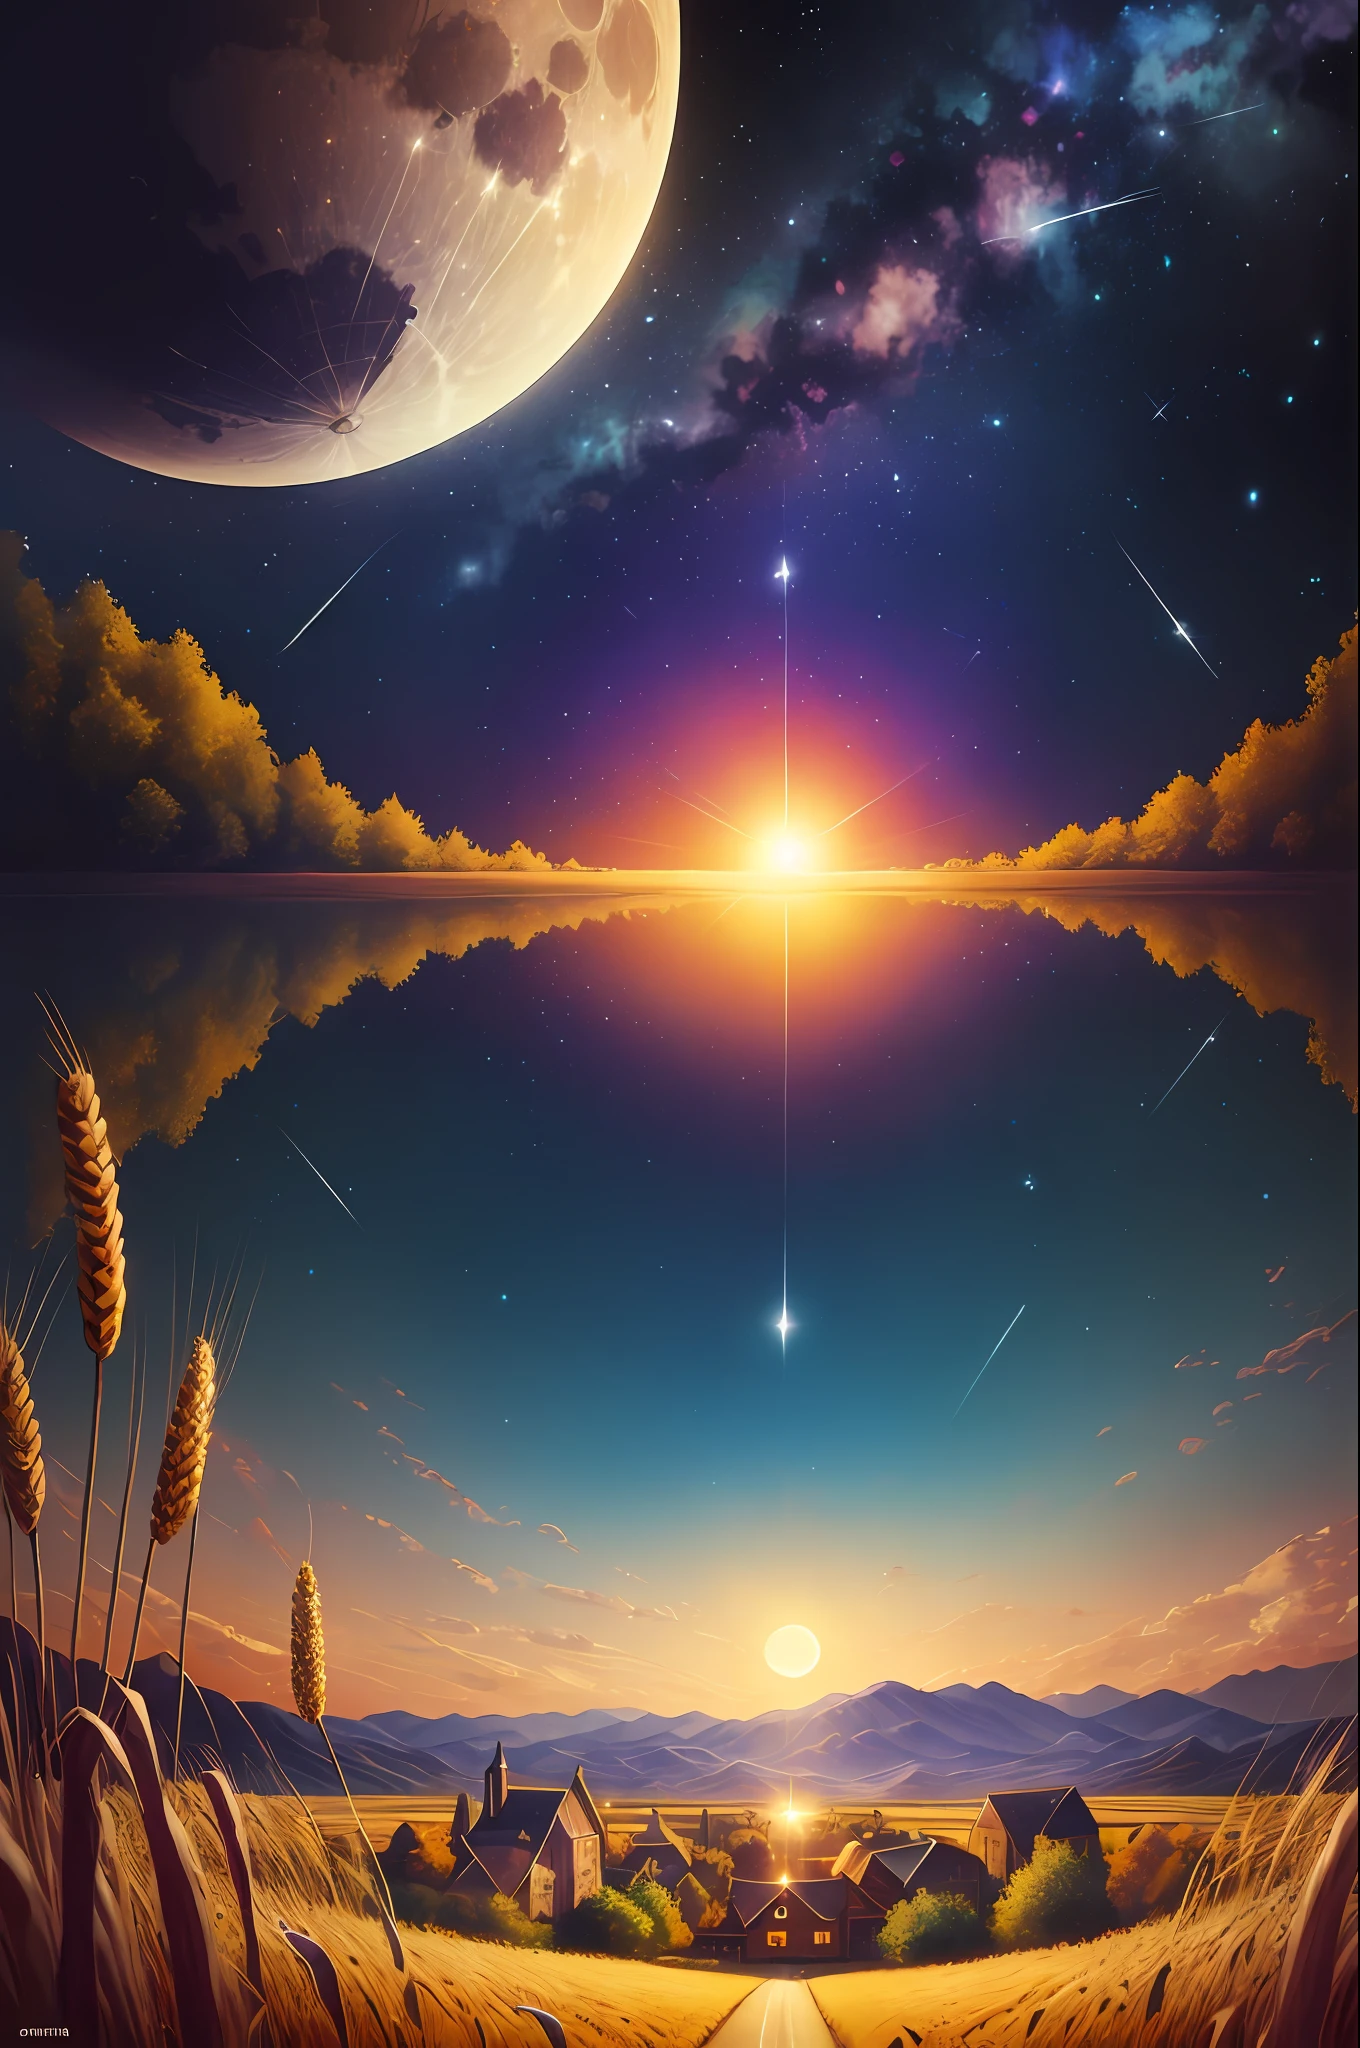 Огромные пейзажные фотографии, (видно снизу, небо выше, открытые поля ниже), настоящийistic, настоящий, Огромный лунный фон (полнолуние: 1.2), (метеор: 0.9), (туманность: 1.3), далекие горы, деревья BREAK Создание искусства, (источник теплого света: 1.2), (Светляк: 1.2), Лампы, много фиолетового и оранжевого, сложные детали, объемное освещение, настоящийism BREAK (шедевр: 1.2), (Лучшее качество), 4k, ультрадетализированный, (динамическая композиция: 1.4), Очень подробно, богатый деталями, (Радужный цвет: 1.2), (Светиться, Атмосферное освещение), мечтательный, волшебный, (Один: 1.2),, бумага_резать, Фантазия, простой фон, Нет Человека, звездное небо, Винсент Ван Гог \ (стиль\), деревья, деревня, Пшеничное поле,